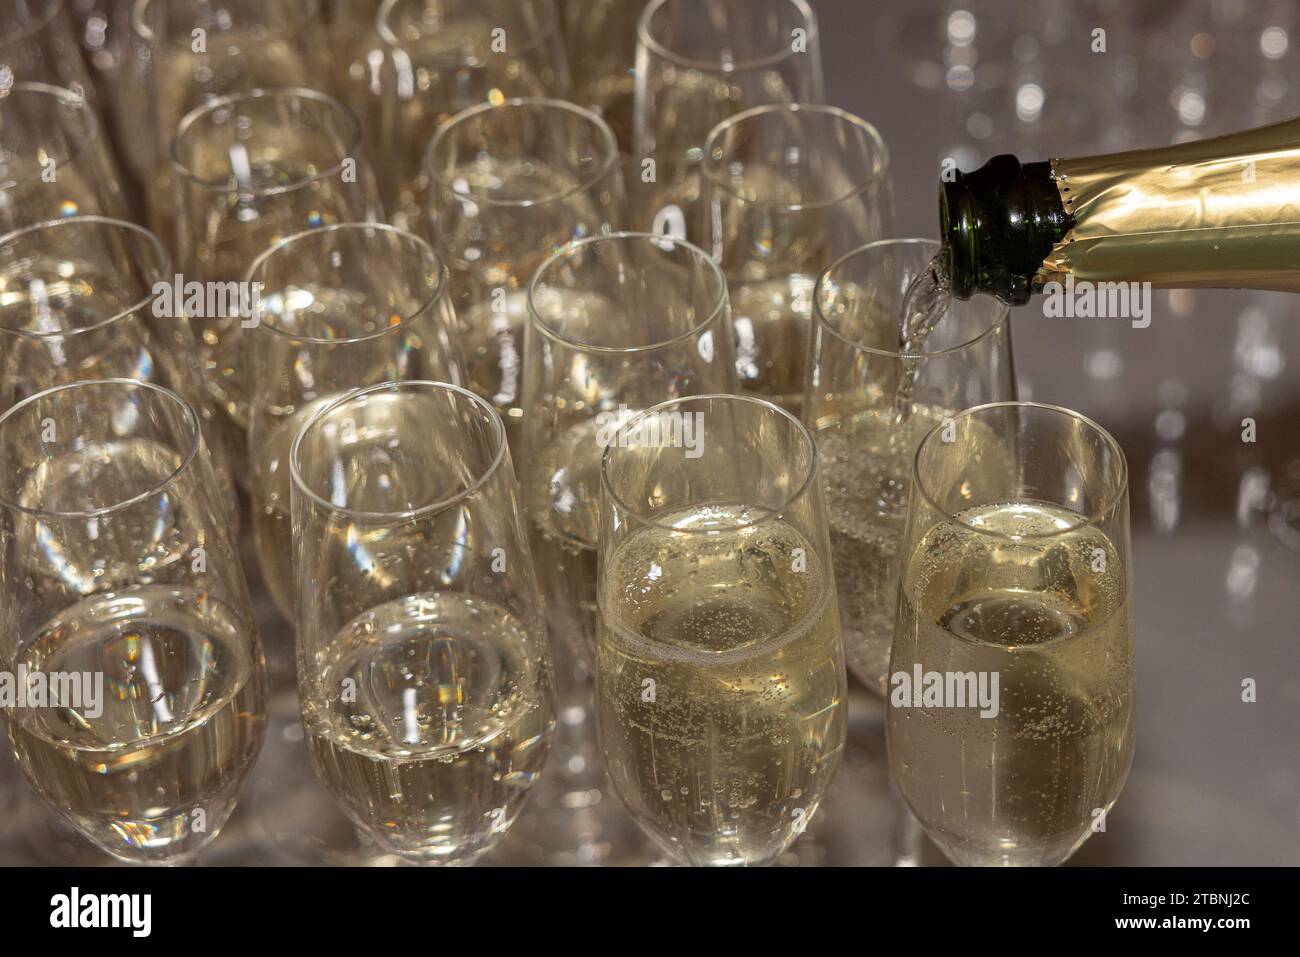 Champagner in Gläser bei einer Party/gesellschaftlichen Veranstaltung Stockfoto